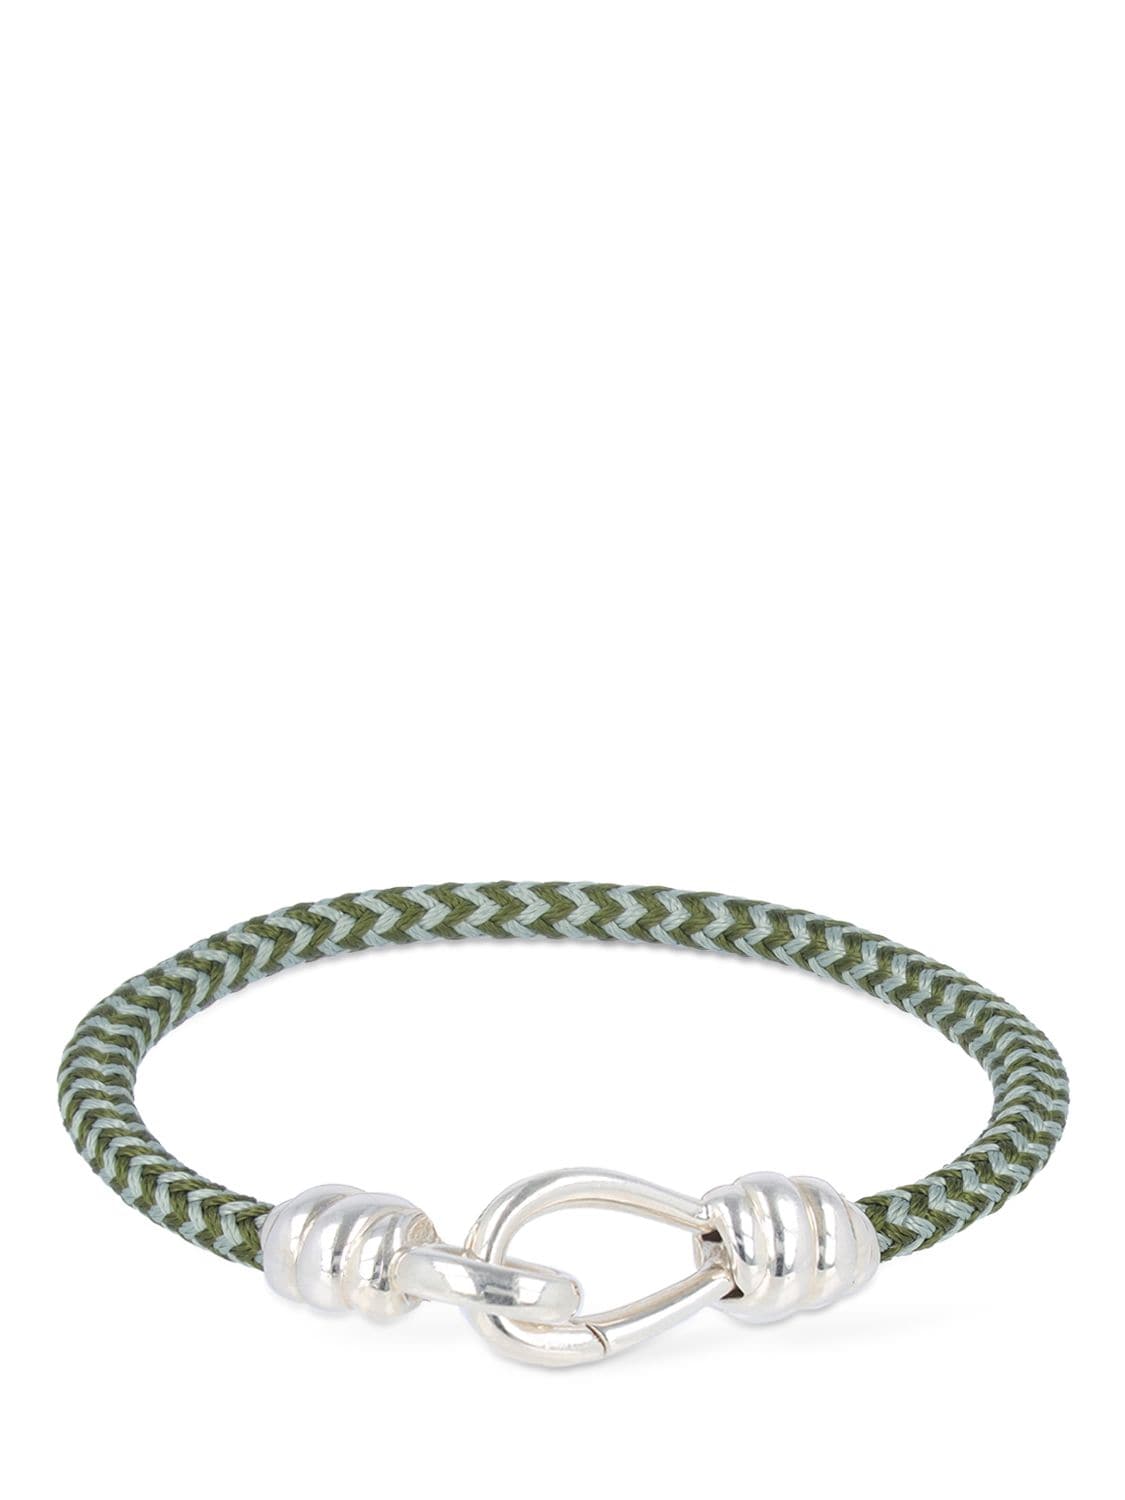 DODO Nodo Silver & Cotton Cord Bracelet